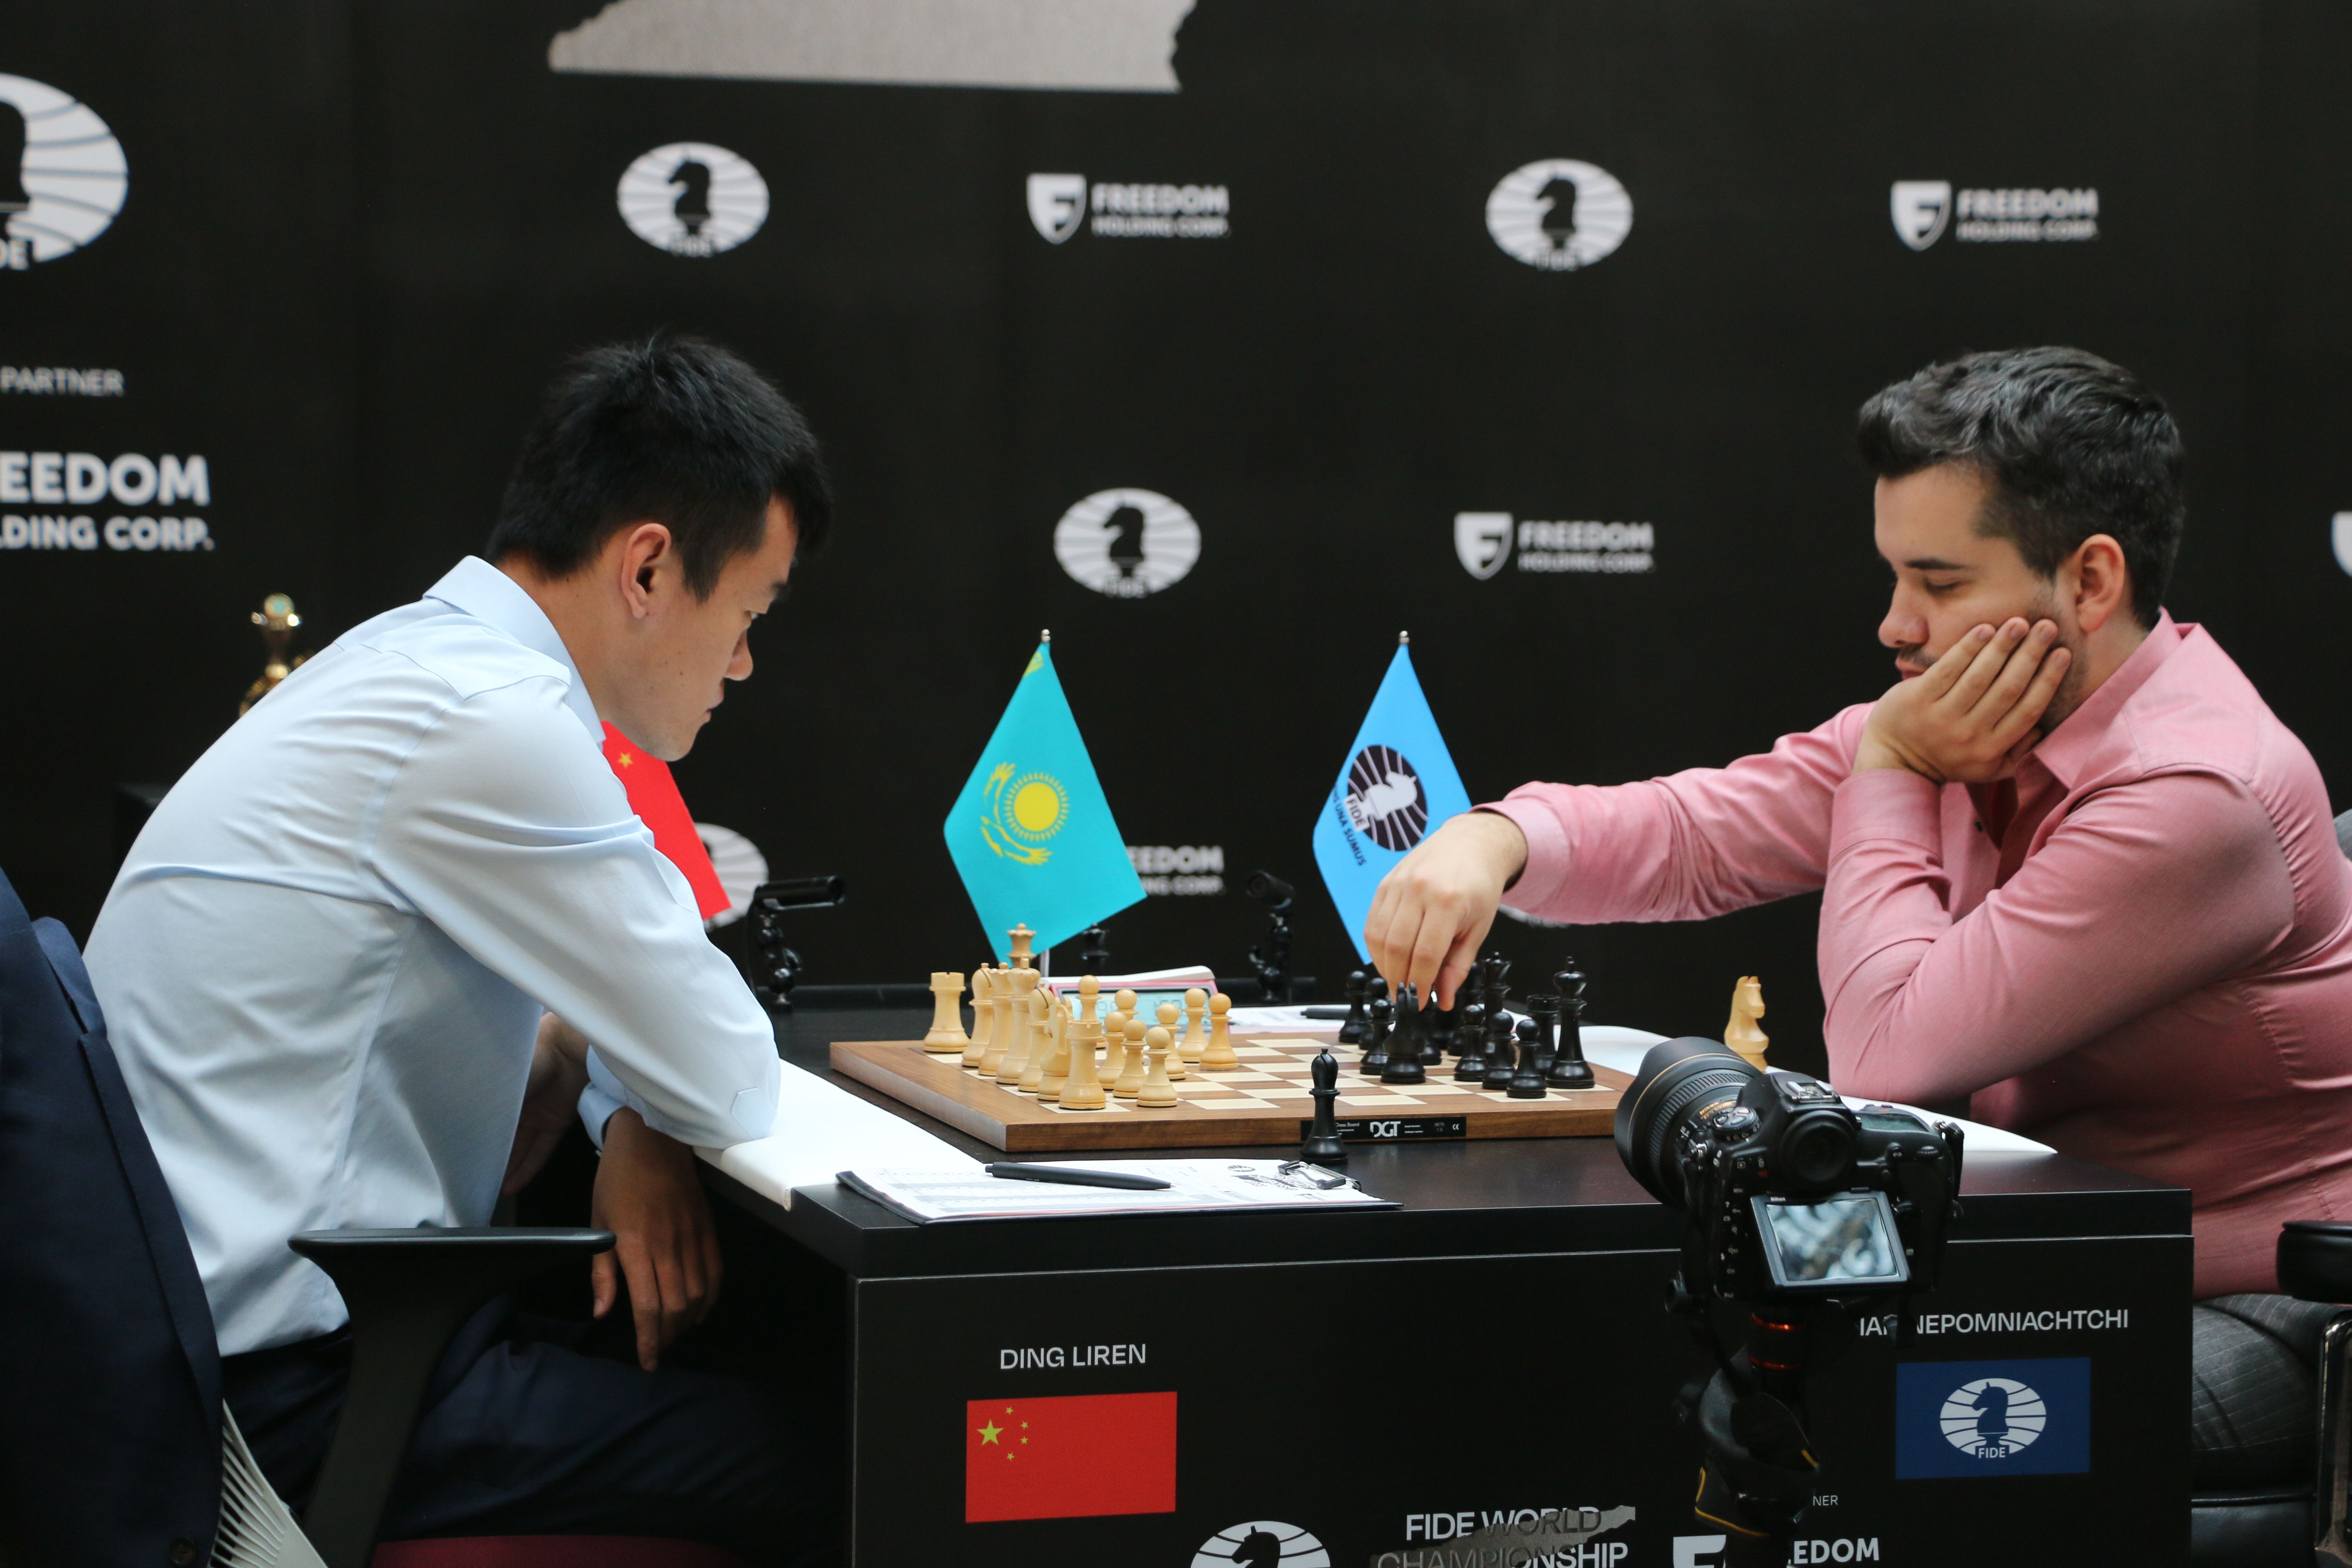 Ding Liren - Biografia e estatísticas  Melhores jogadores de xadrez 